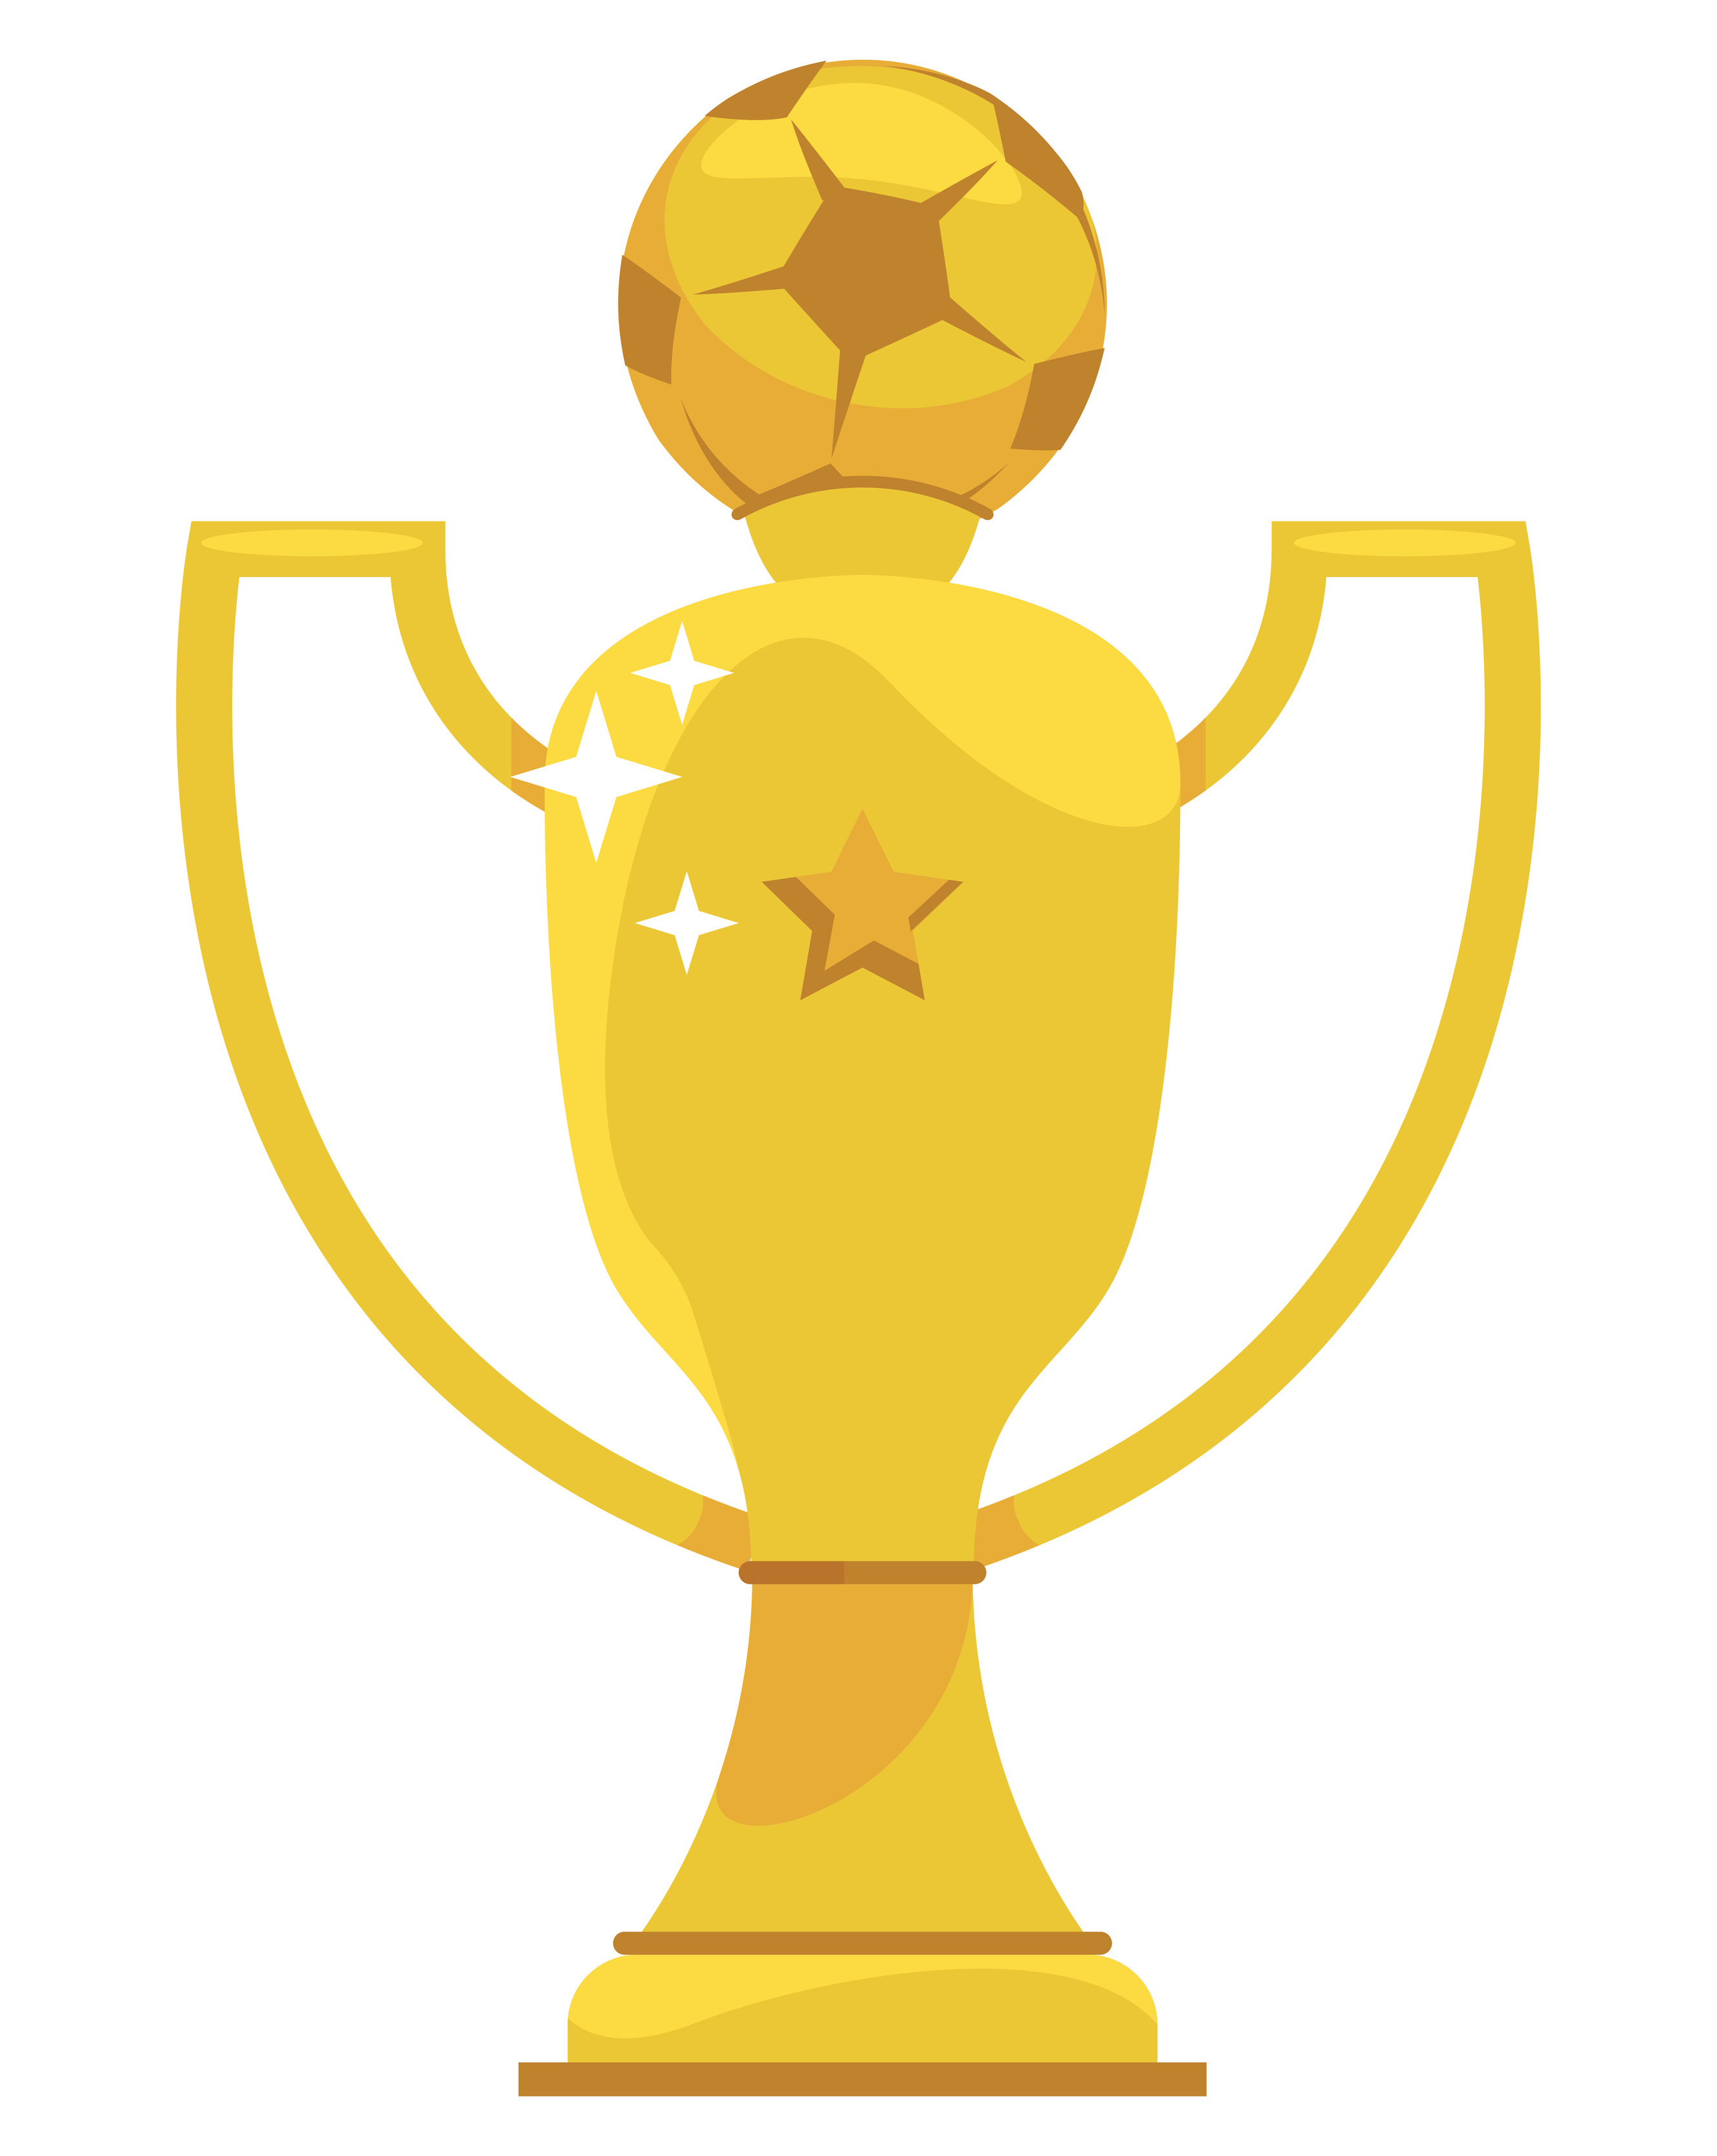 coppa trofeo d'oro di calcio 4713970 Arte vettoriale a Vecteezy